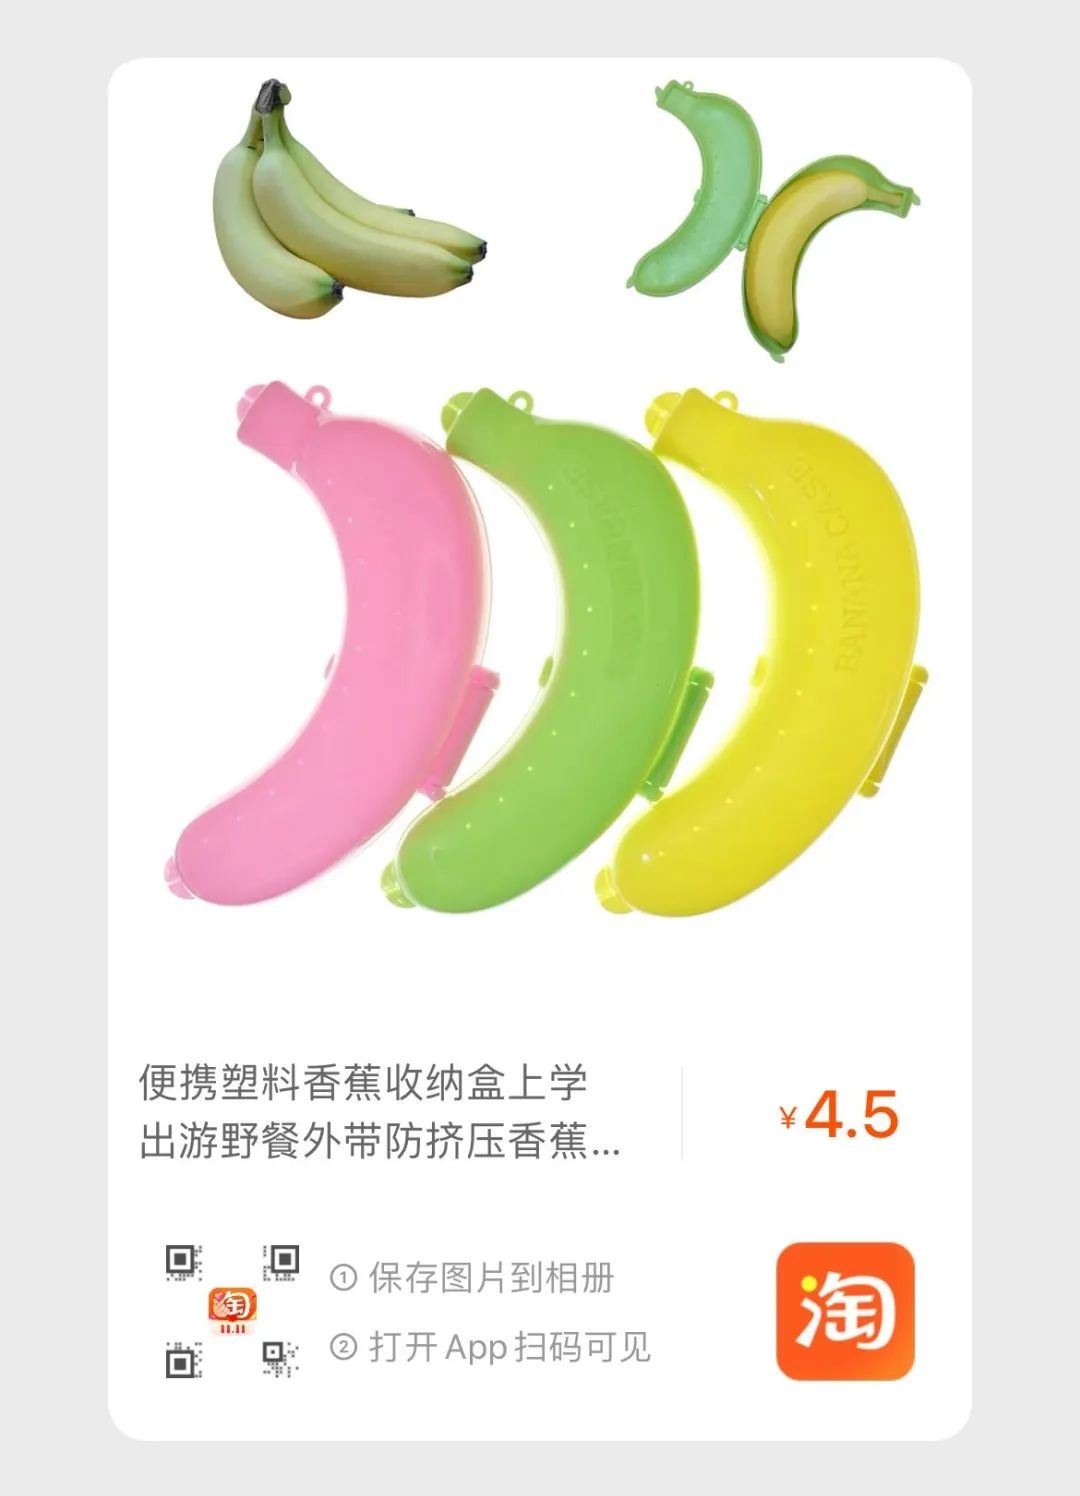 Banana carrier